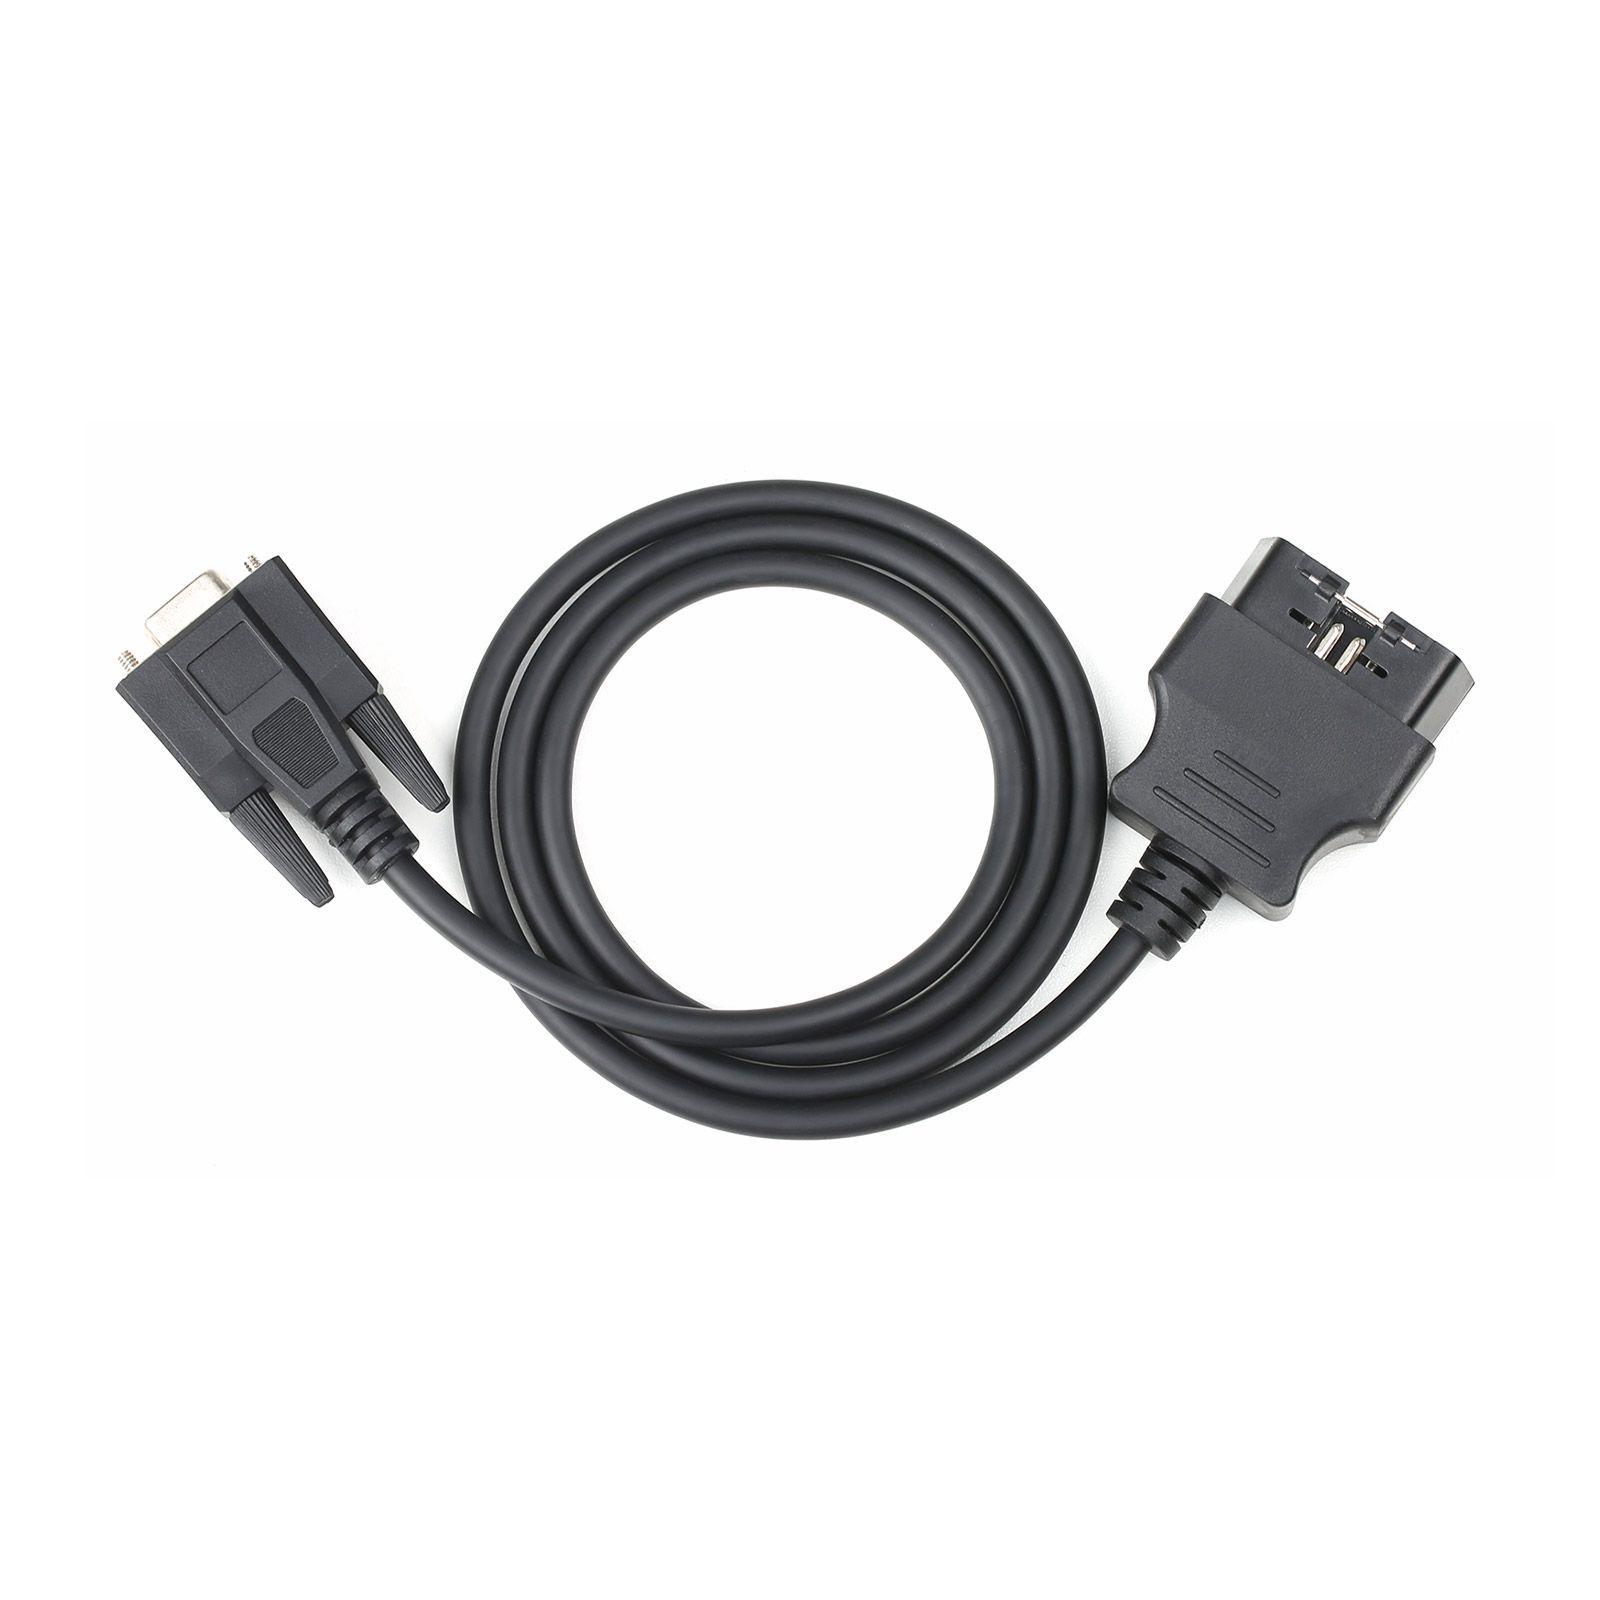 USB V-CAN3 Automotive CAN Netzwerk Test Equipment Anschluss PC und CAN Netzwerk Selbst angetrieben von USB